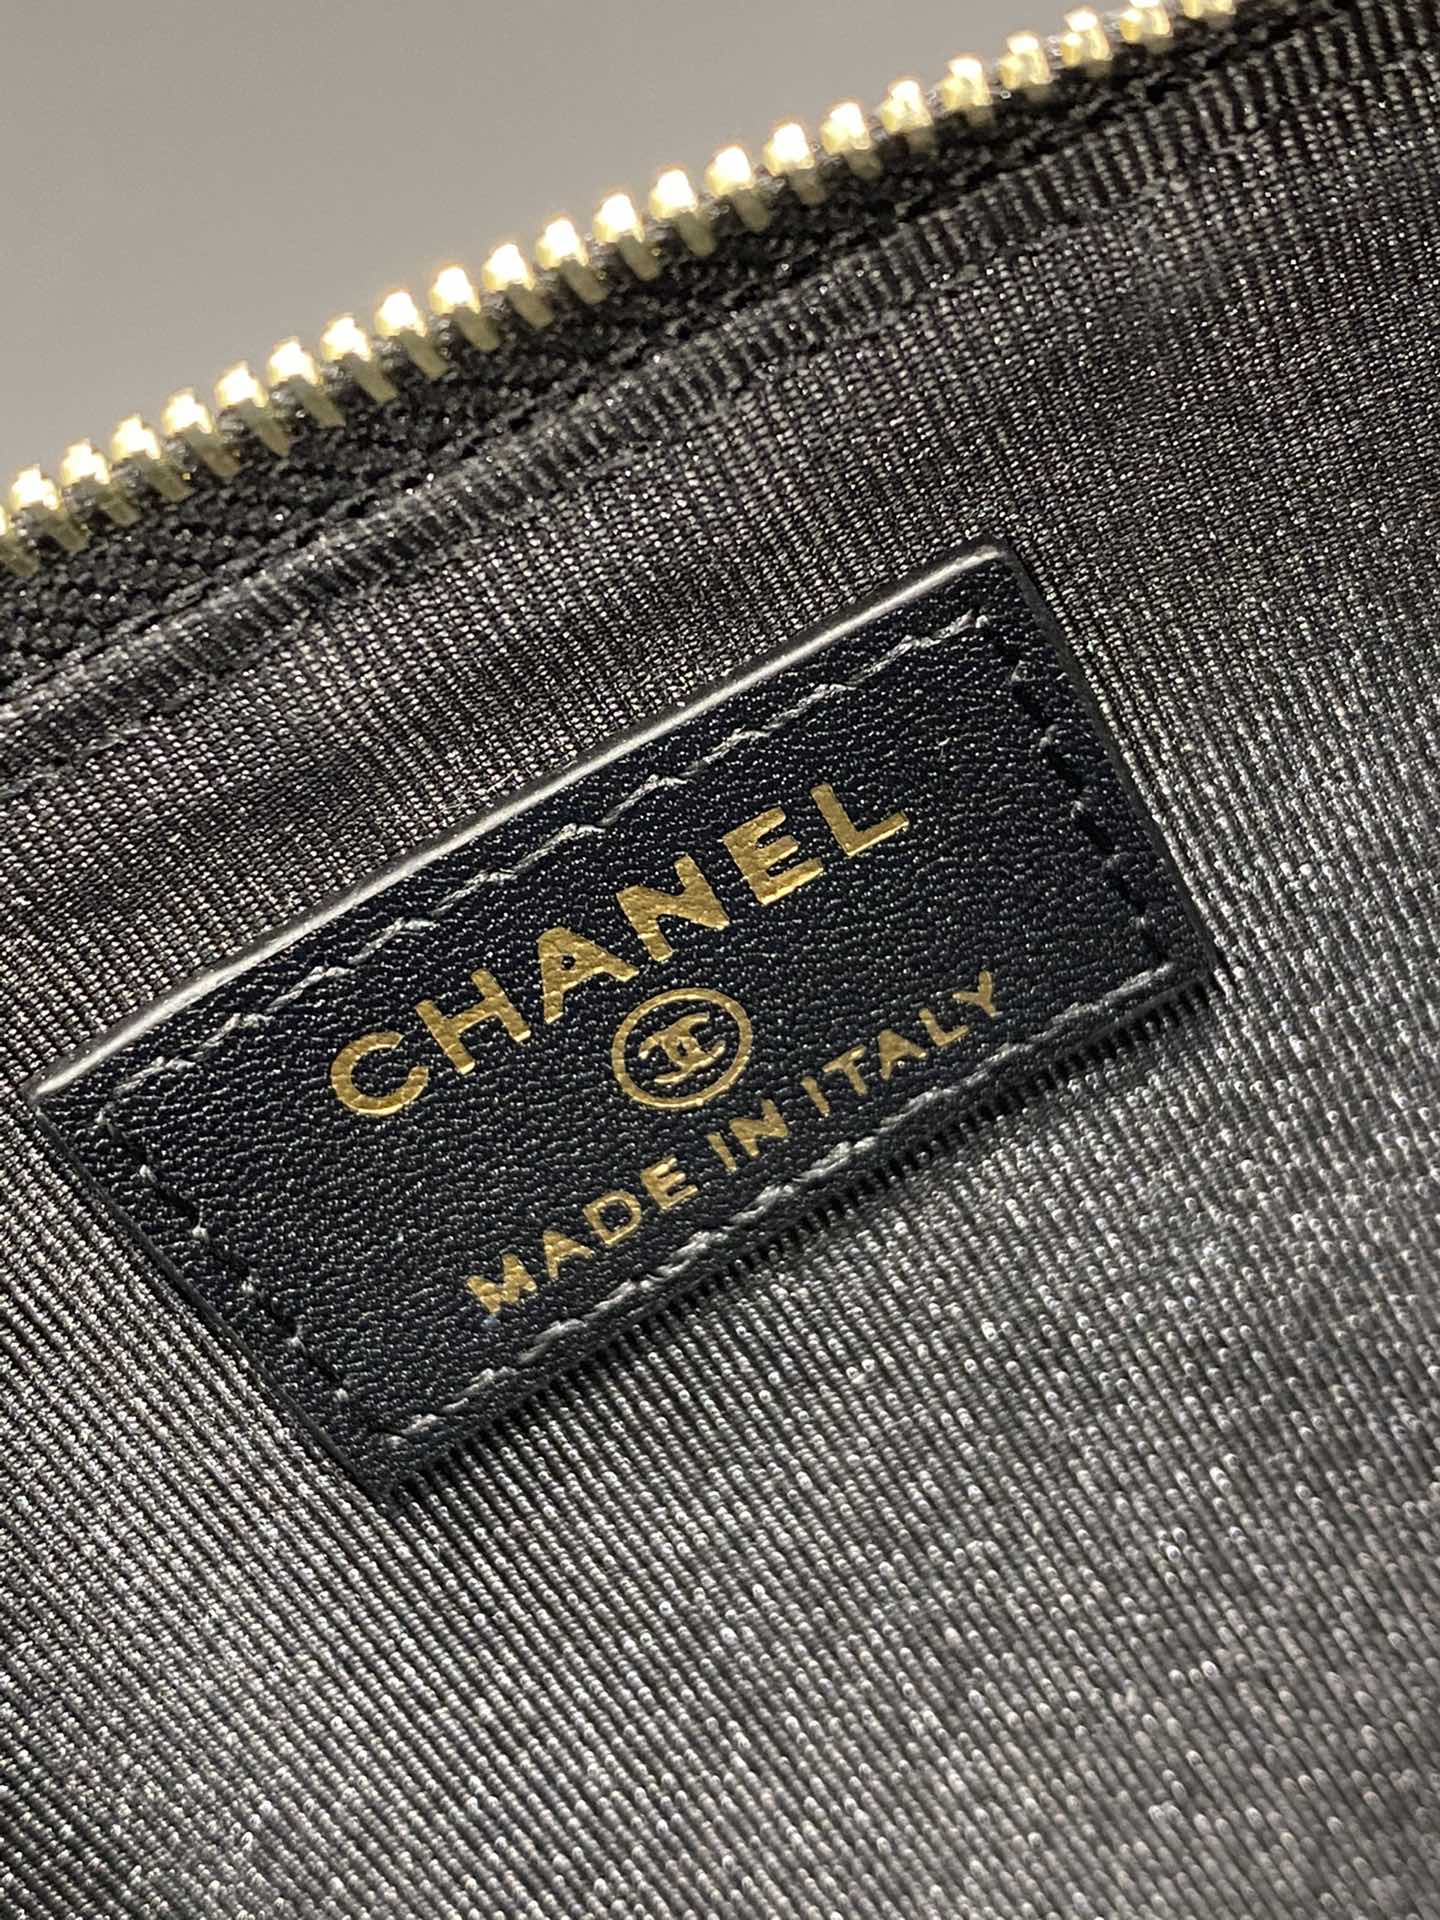 新款Chanel手机包 全新Logo设计 小球纹牛皮 5个卡位+一个拉链隔层+手机位 19.5*10*3